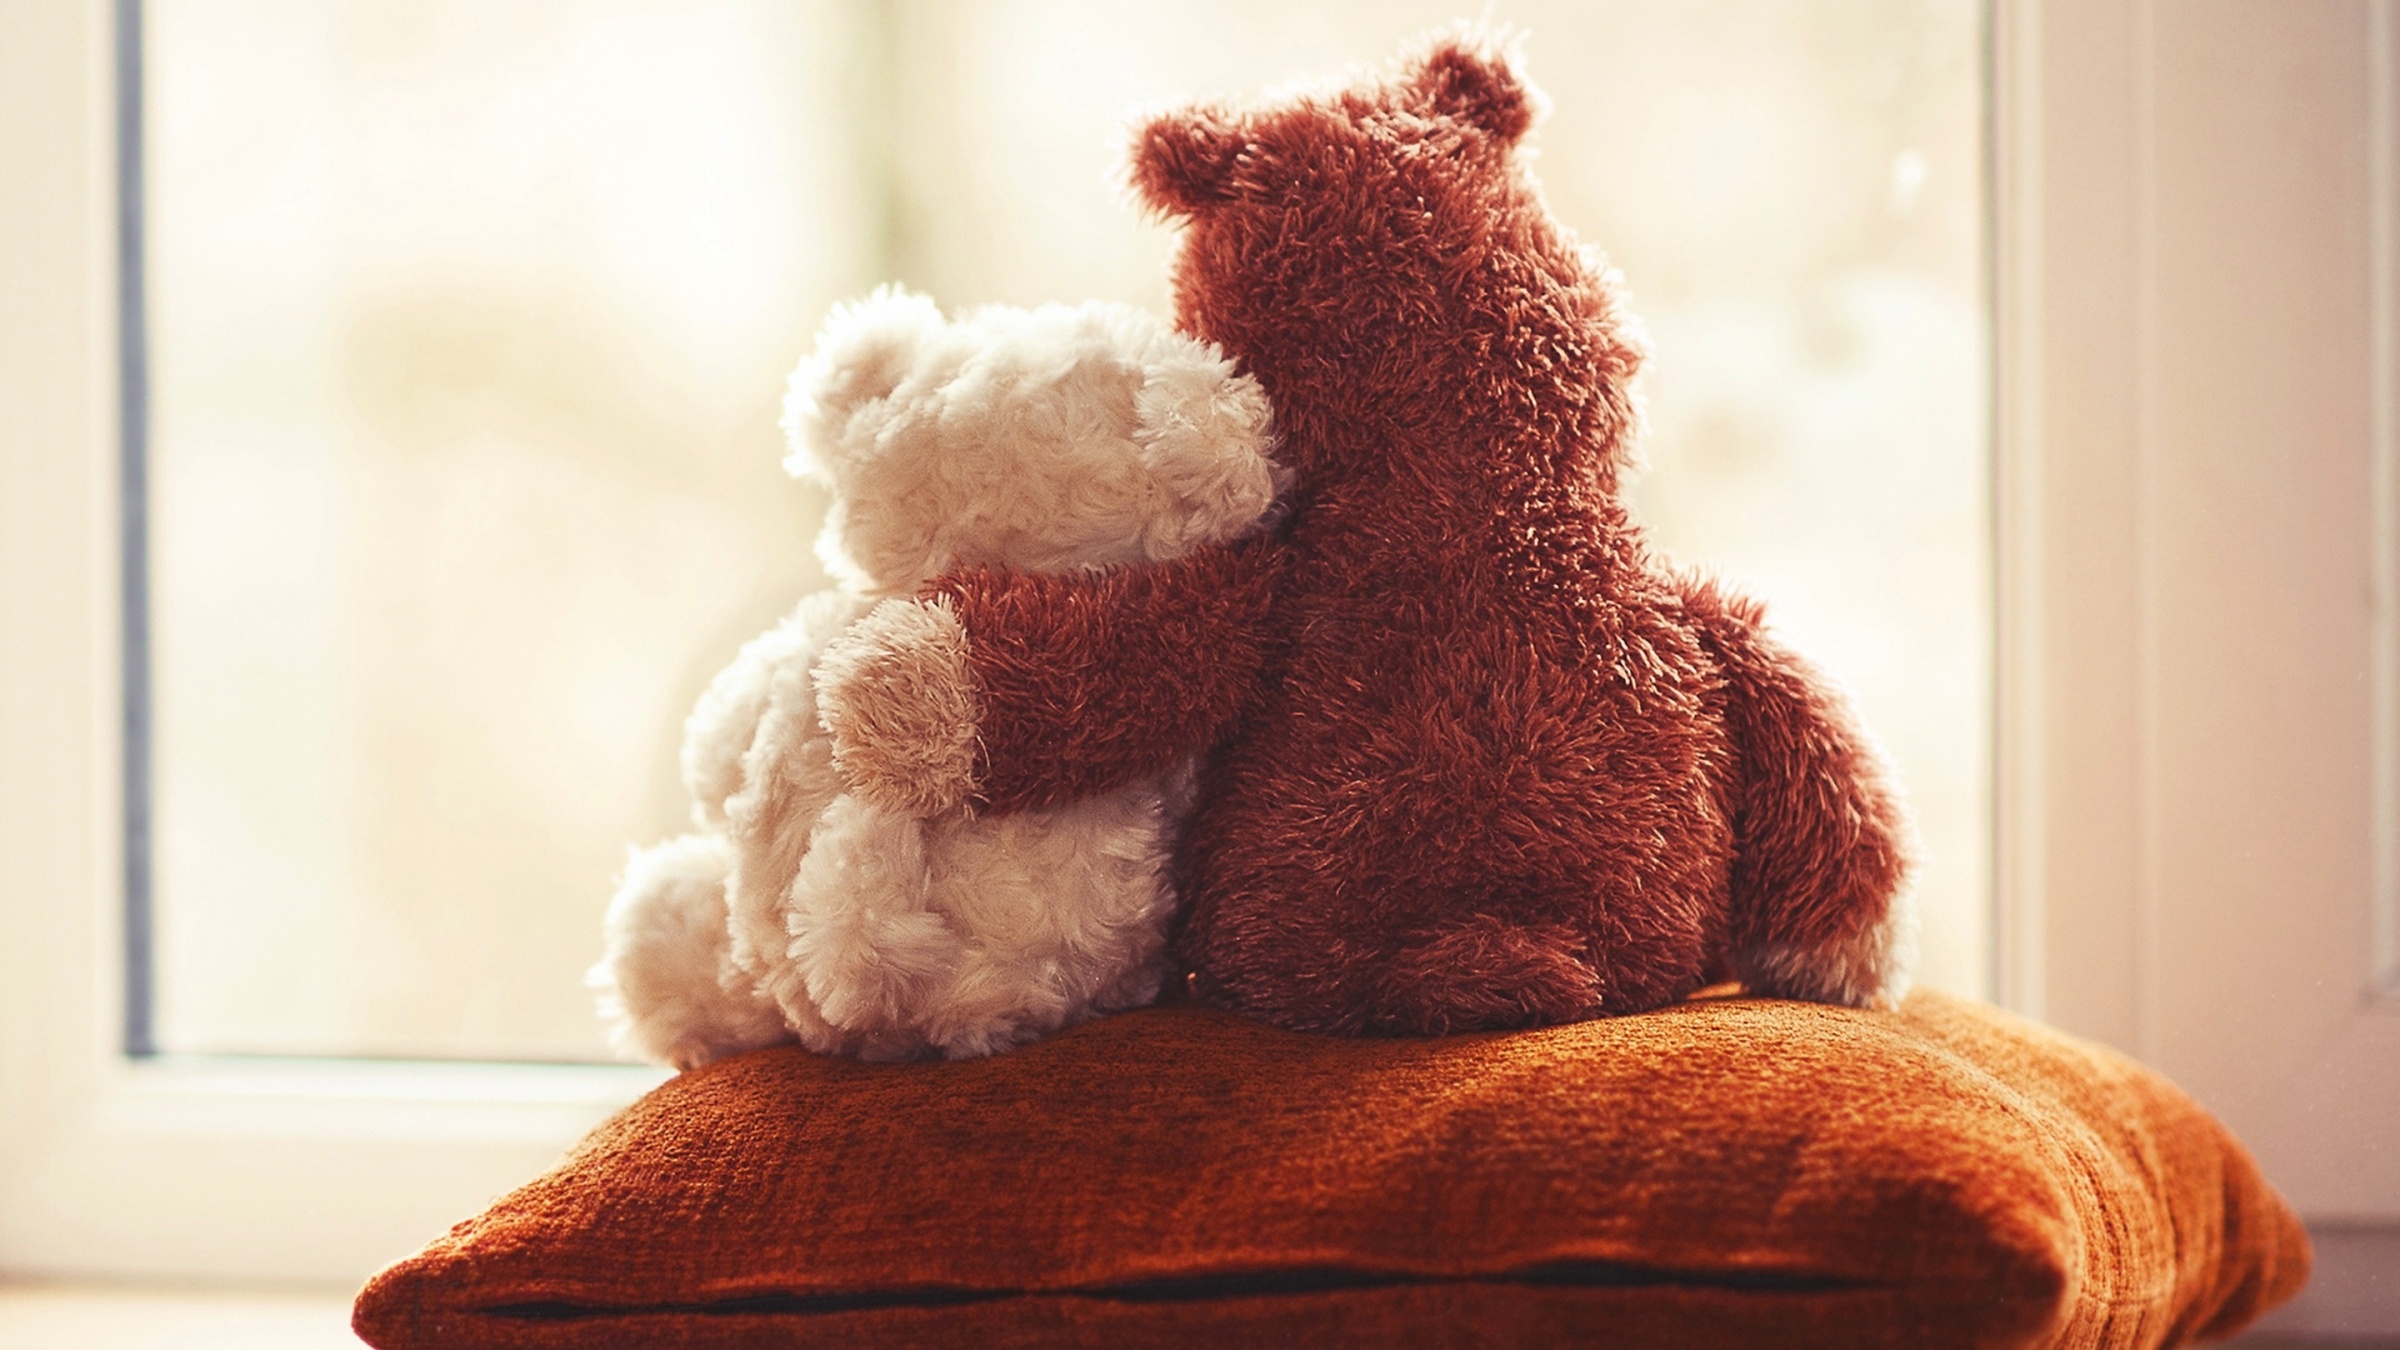 Cute Teddy Bear Couple Love